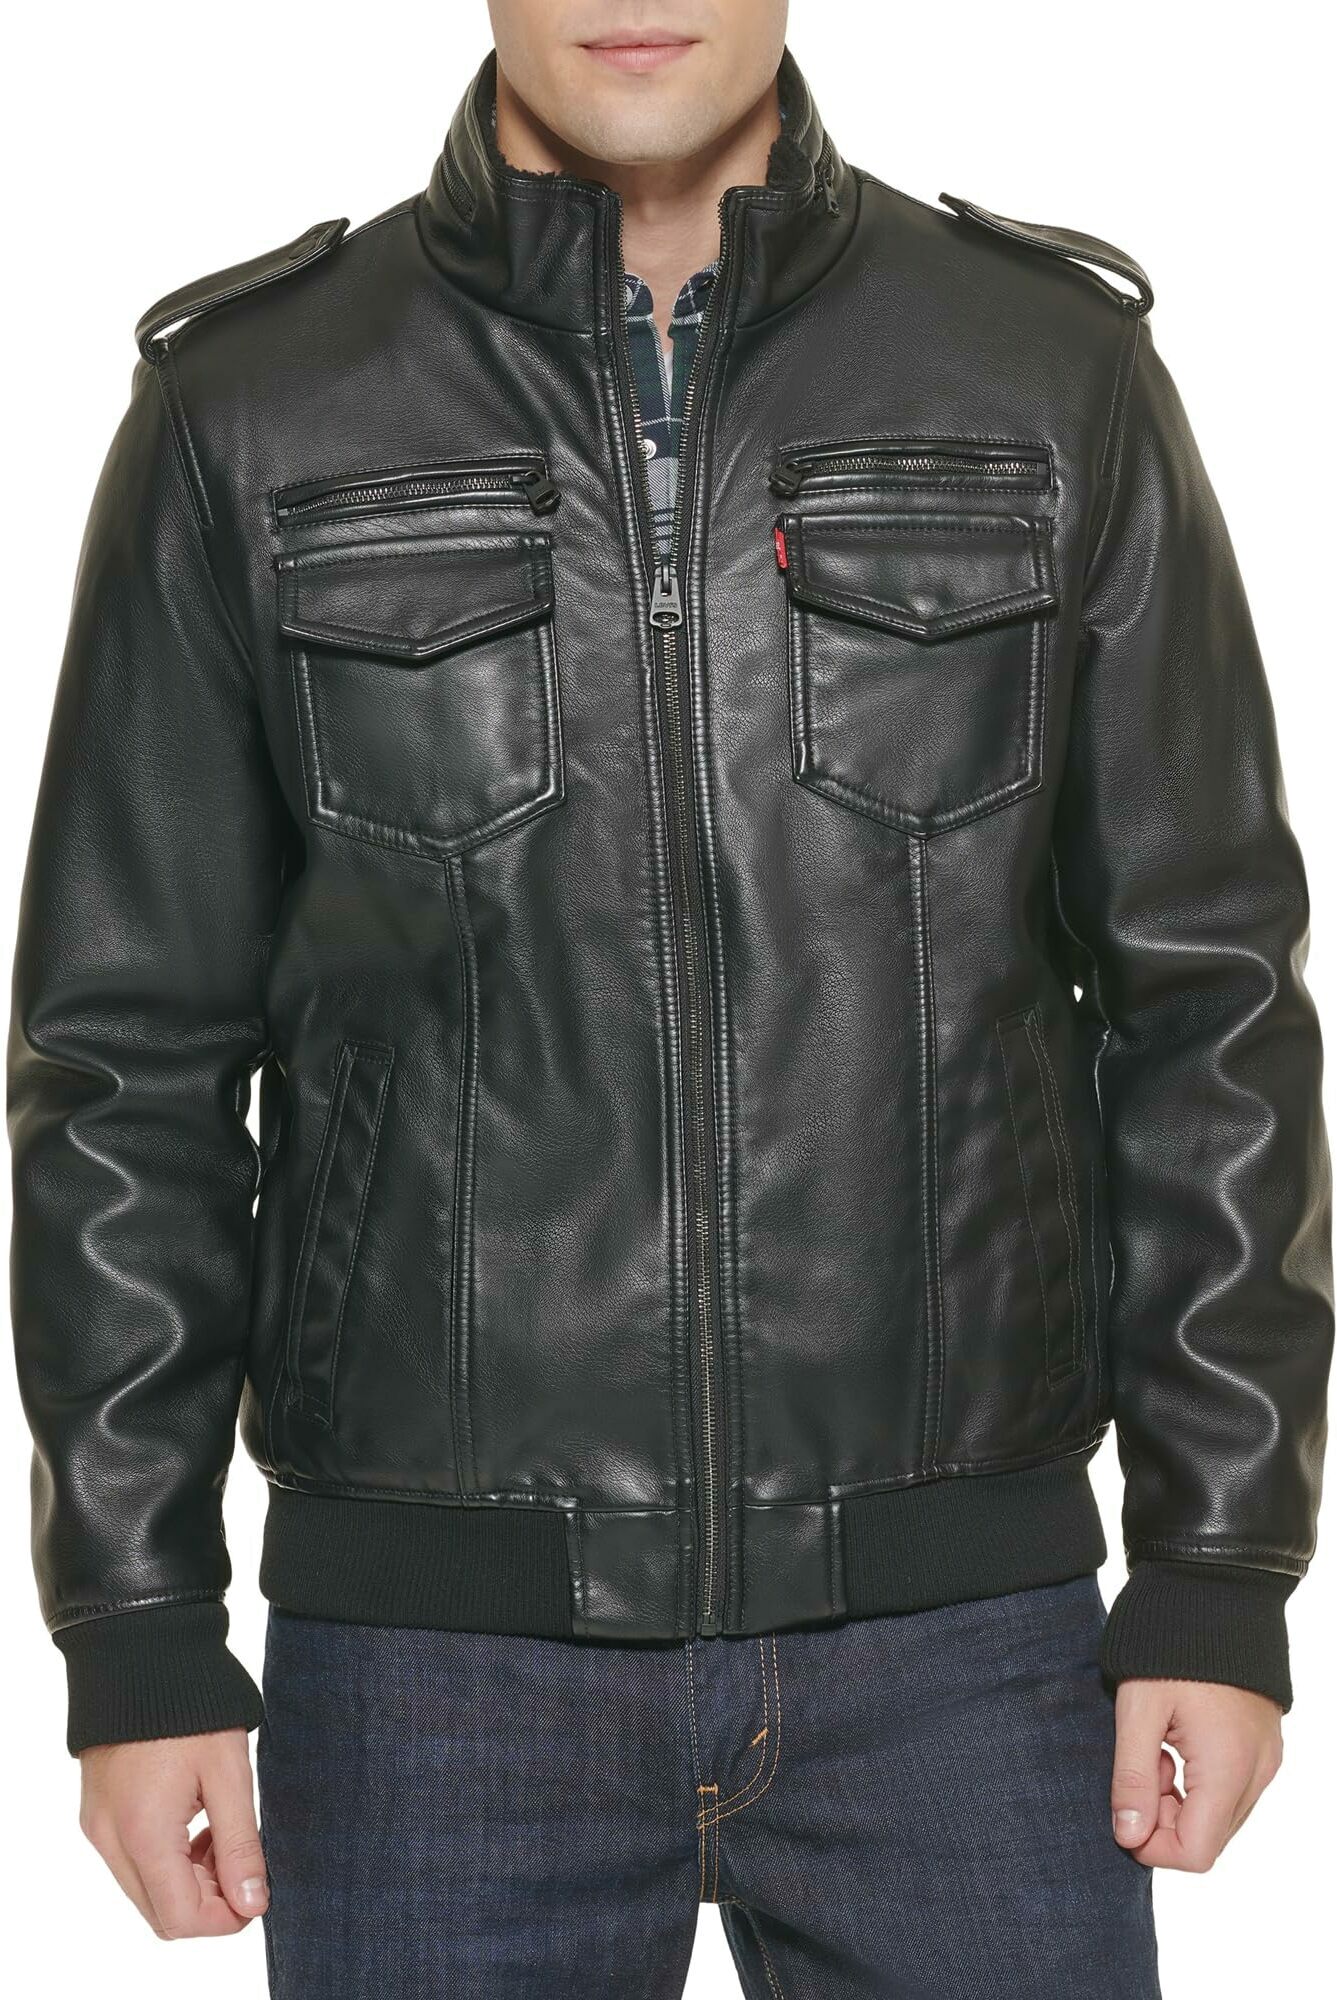 Кожаная куртка мужская Levi's LM8RU476-BLK черная S